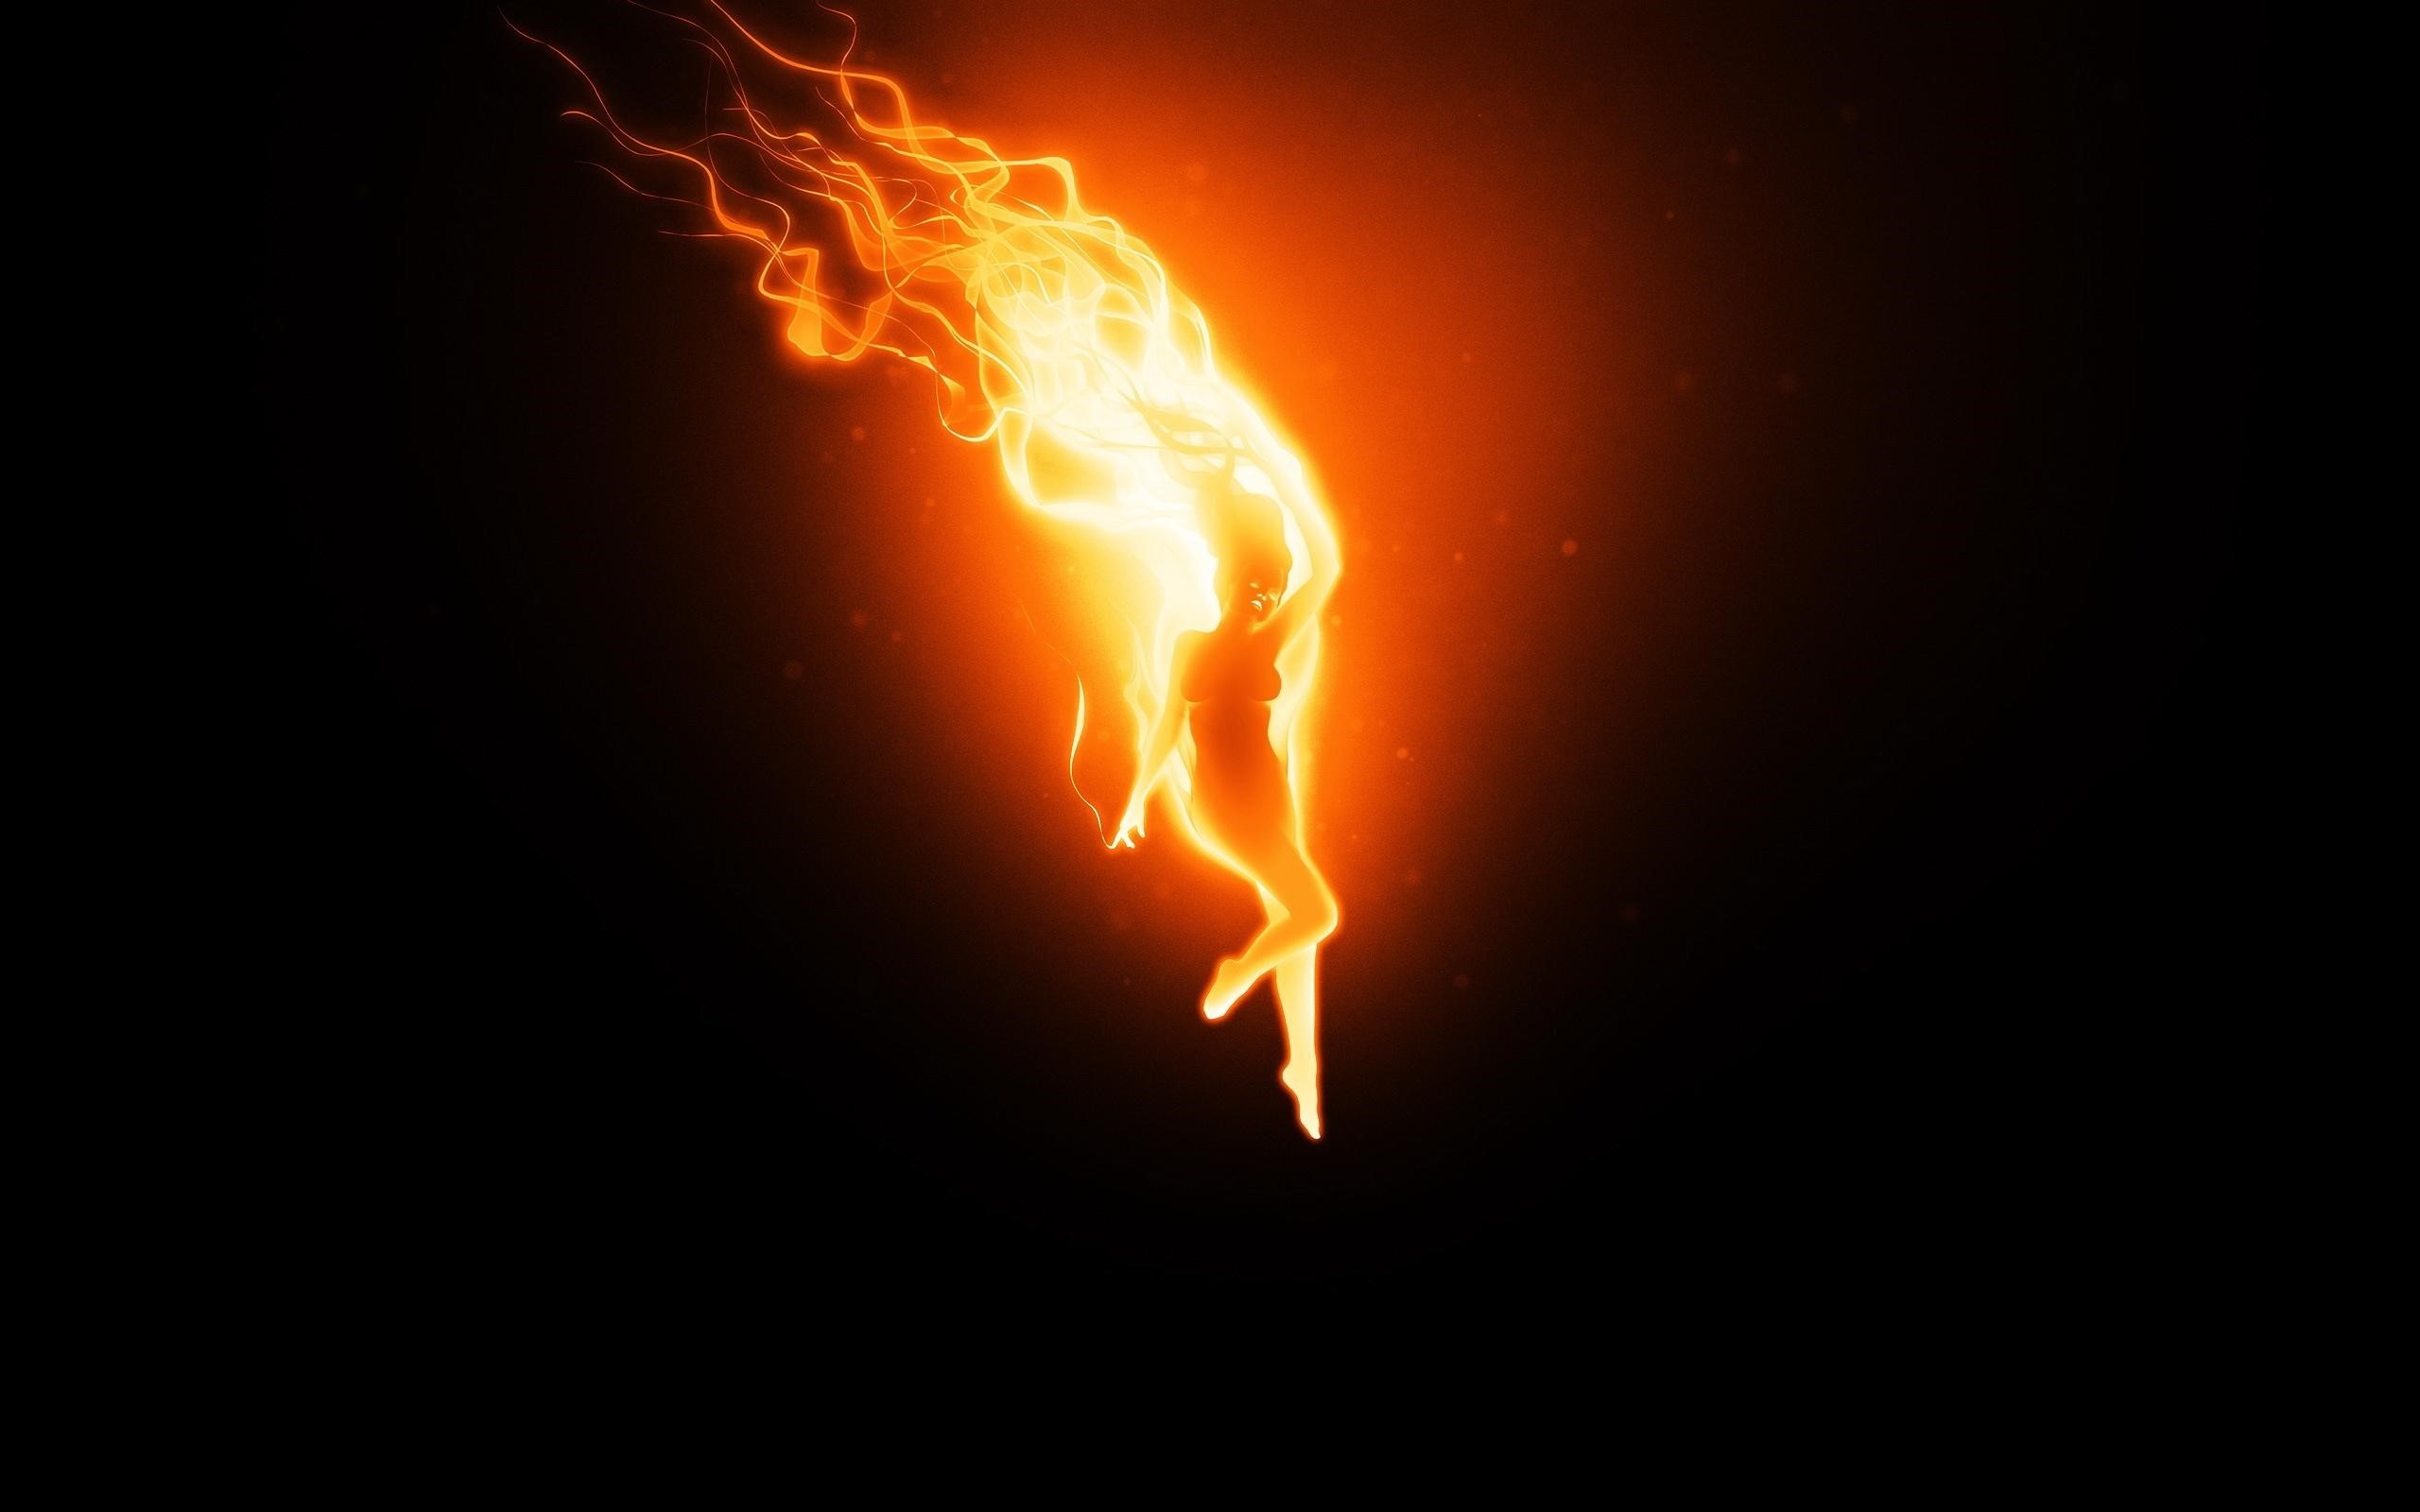 Abstract Fire Wallpaper - Magic Fire - HD Wallpaper 